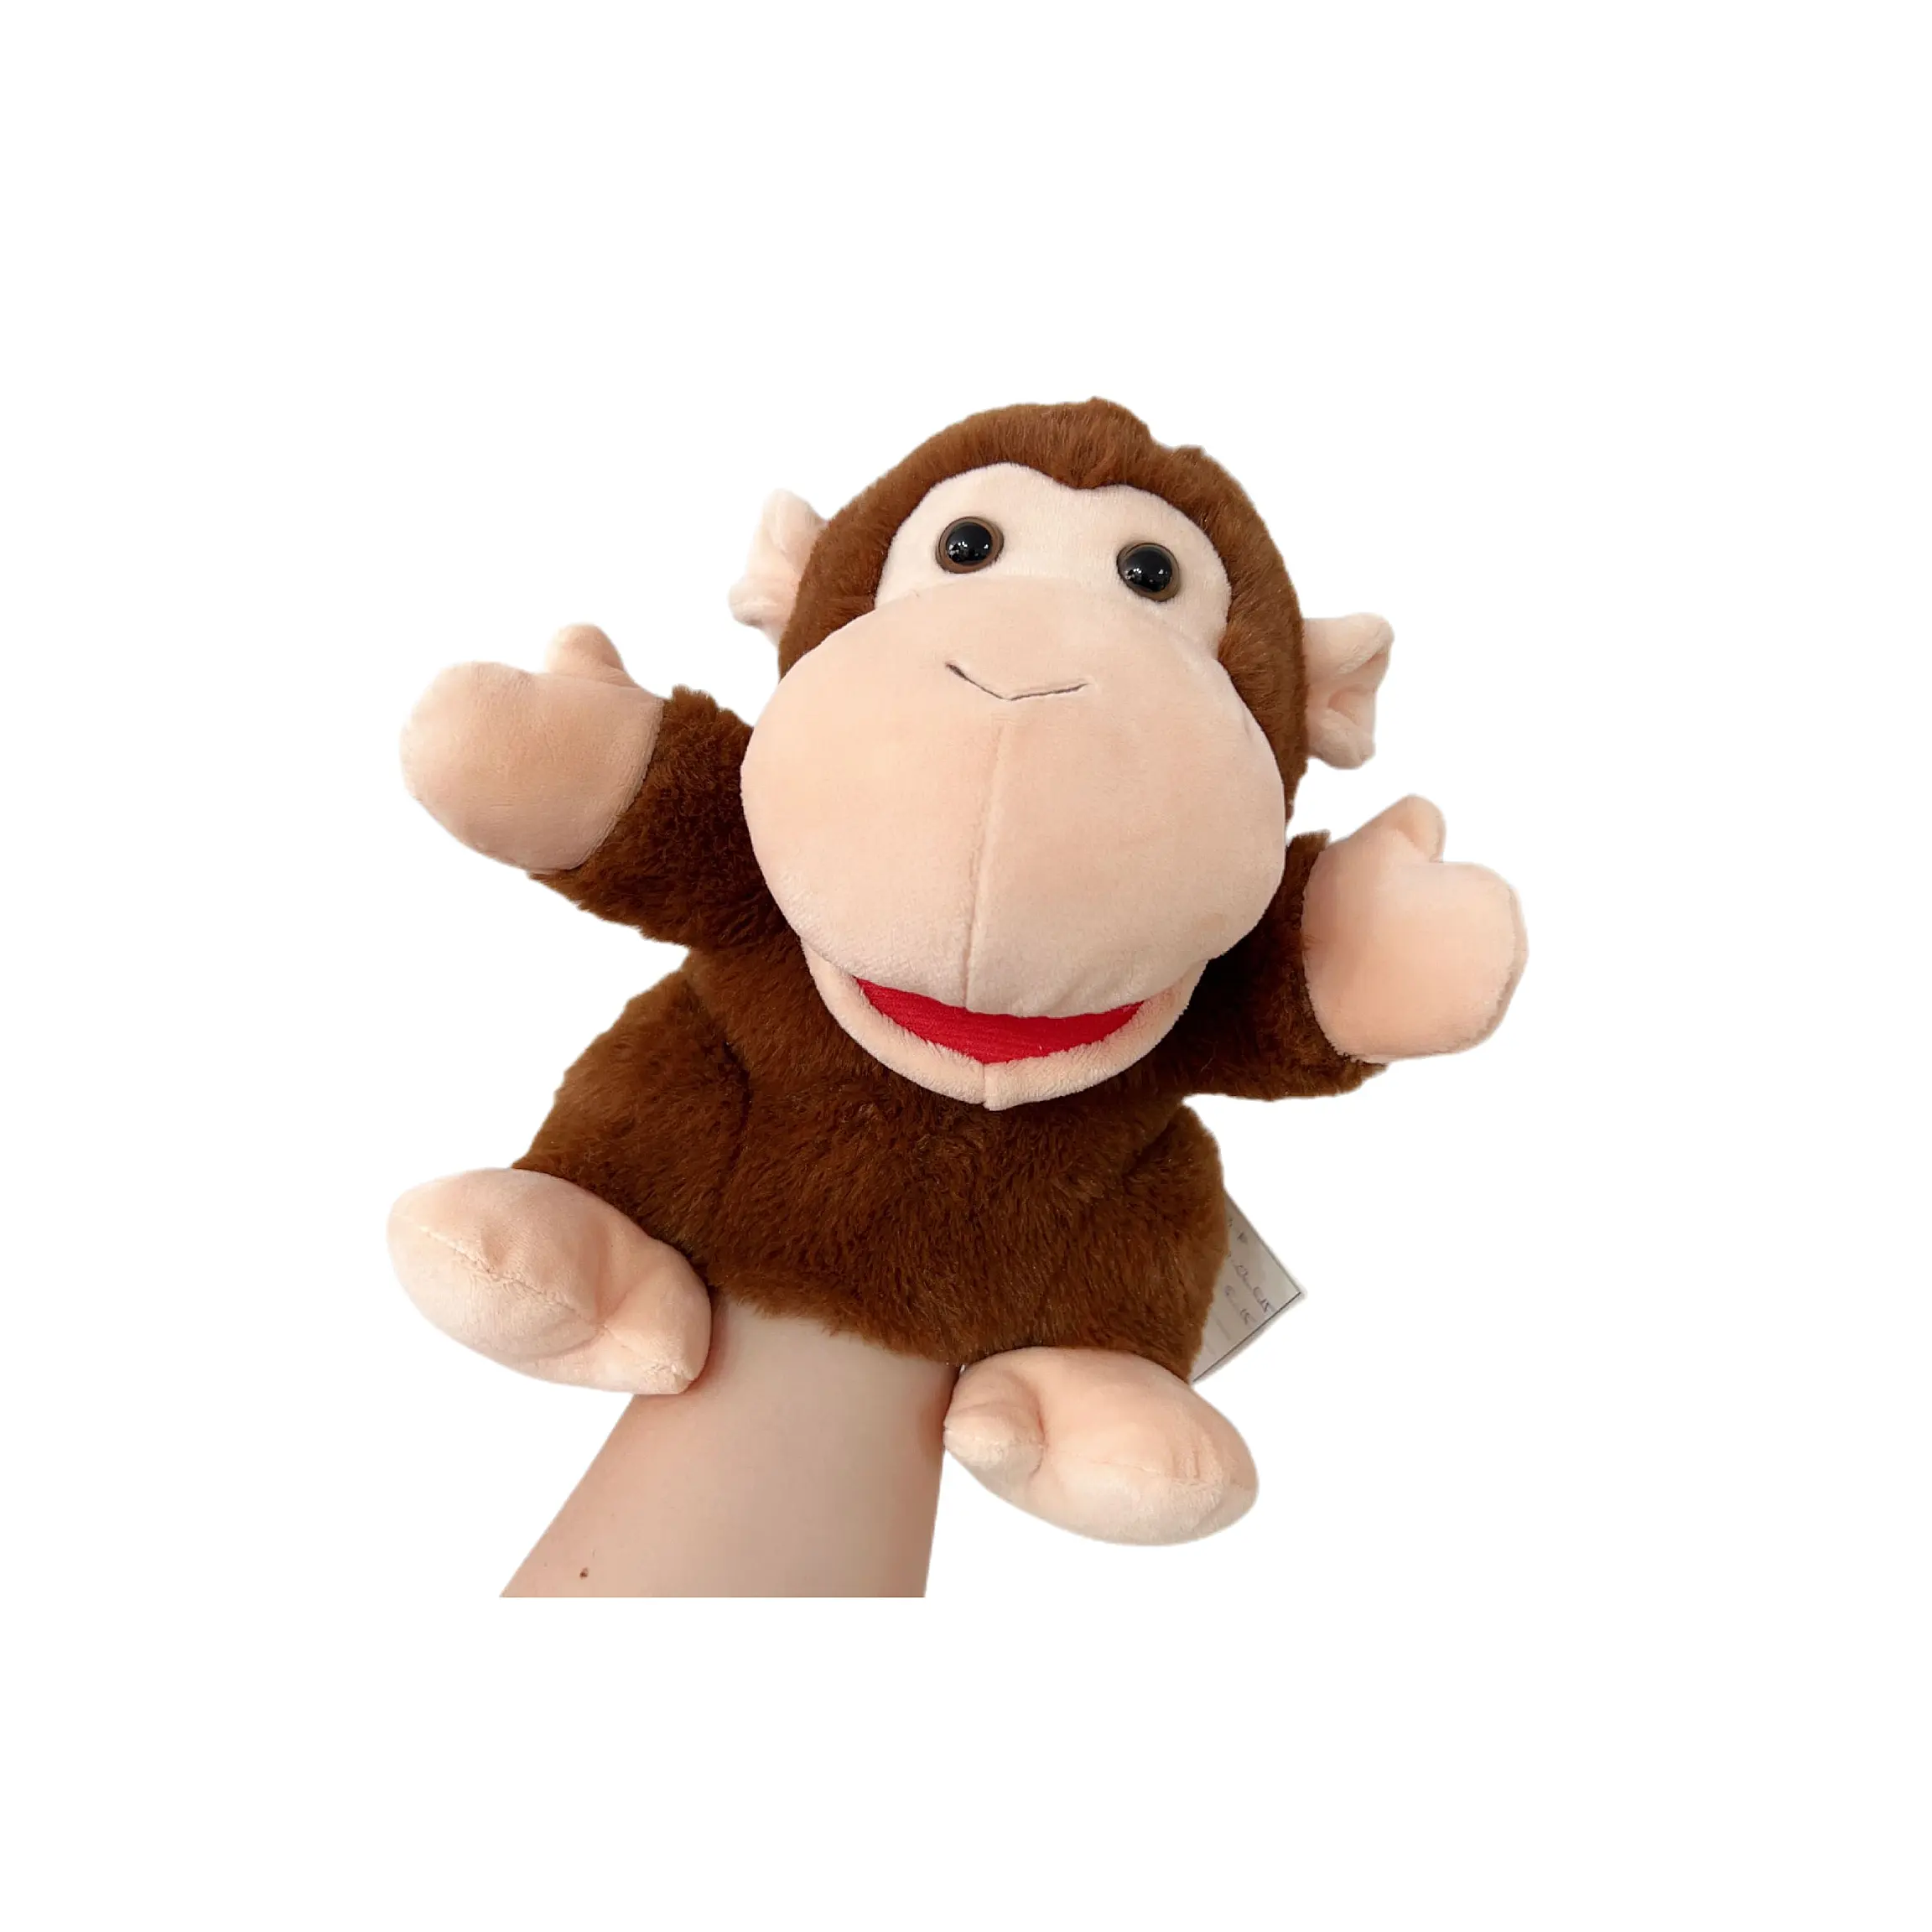 Keluaran baru boneka tangan mewah terbaru boneka tangan kartun monyet Muppets hadiah pendidikan Anak Dini